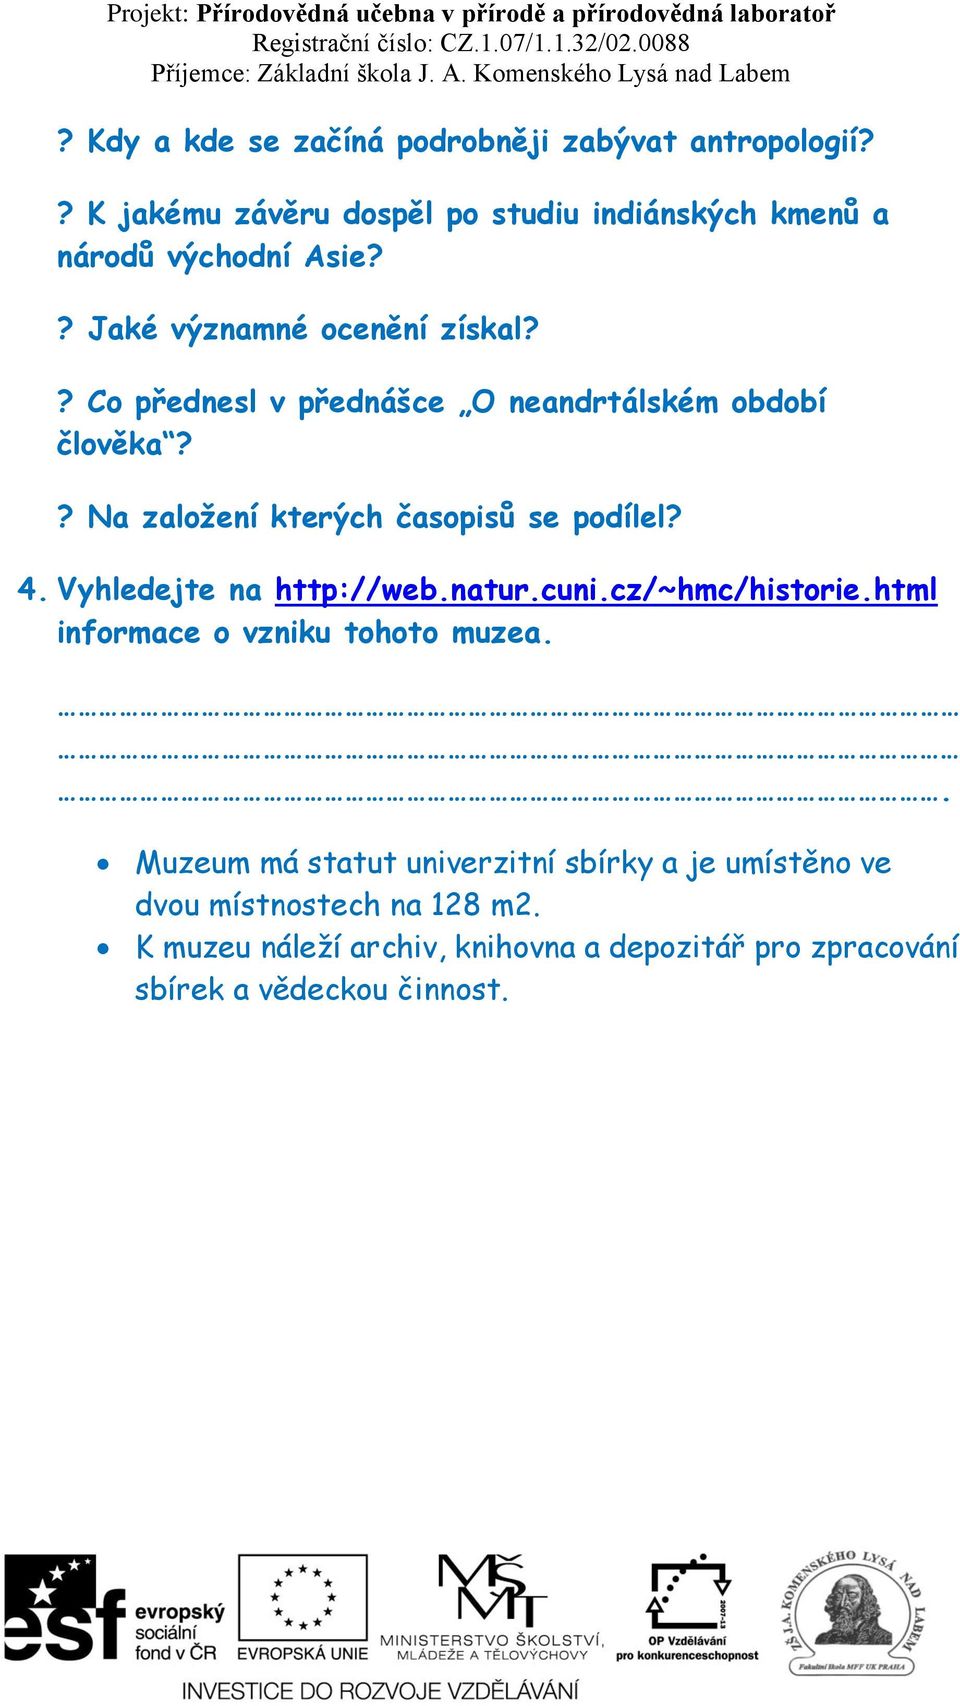 4. Vyhledejte na http://web.natur.cuni.cz/~hmc/historie.html informace o vzniku tohoto muzea.